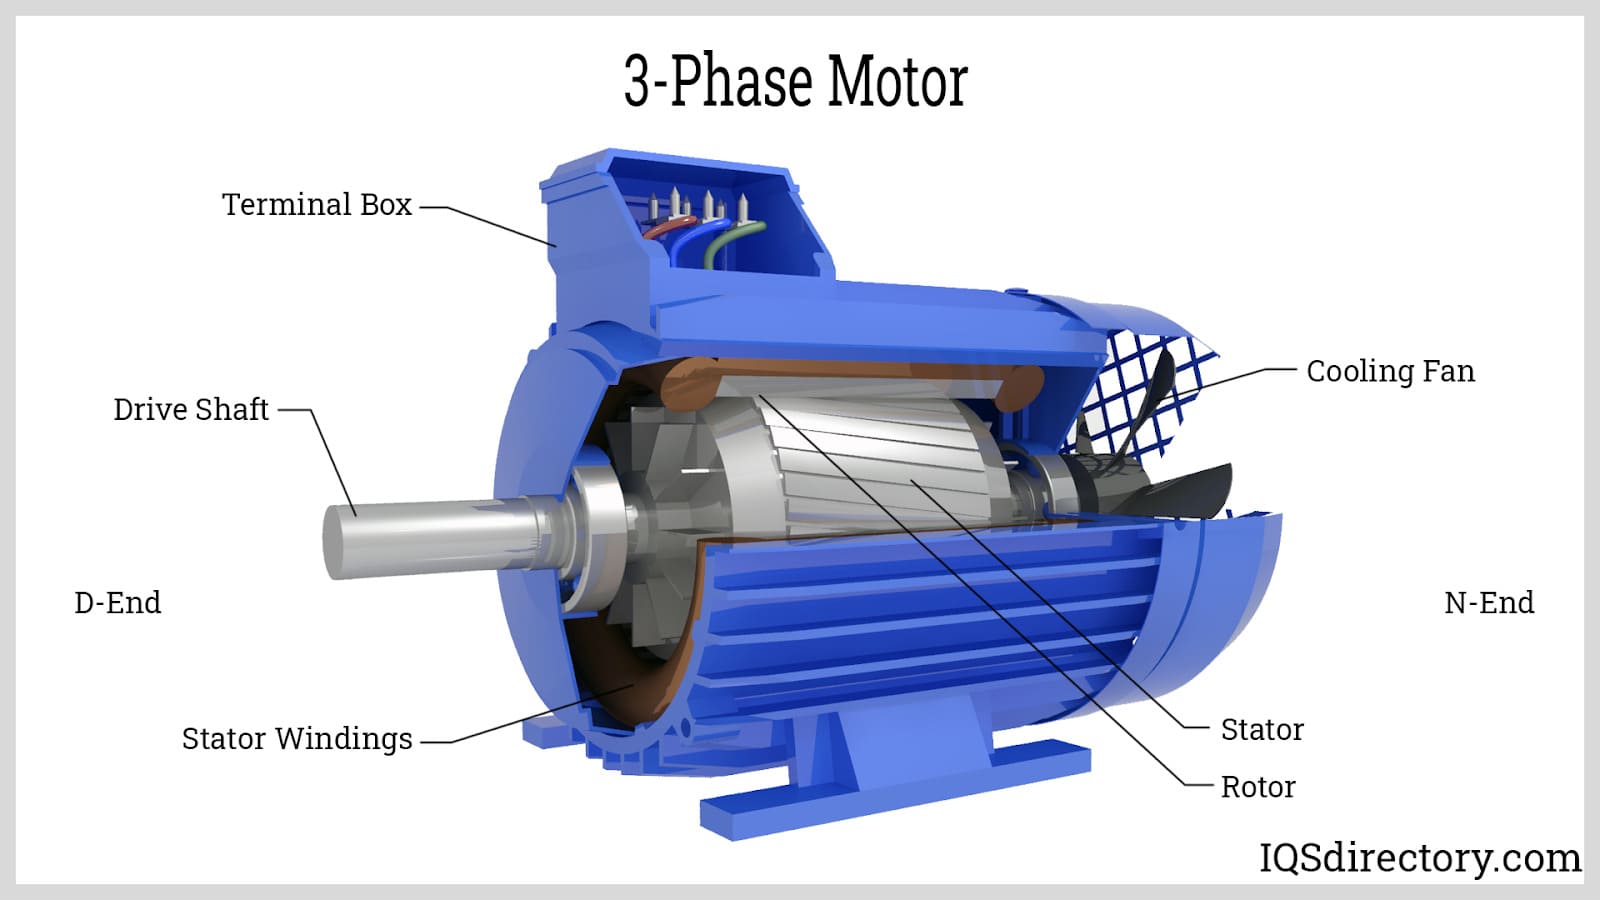 3-Phase Motor